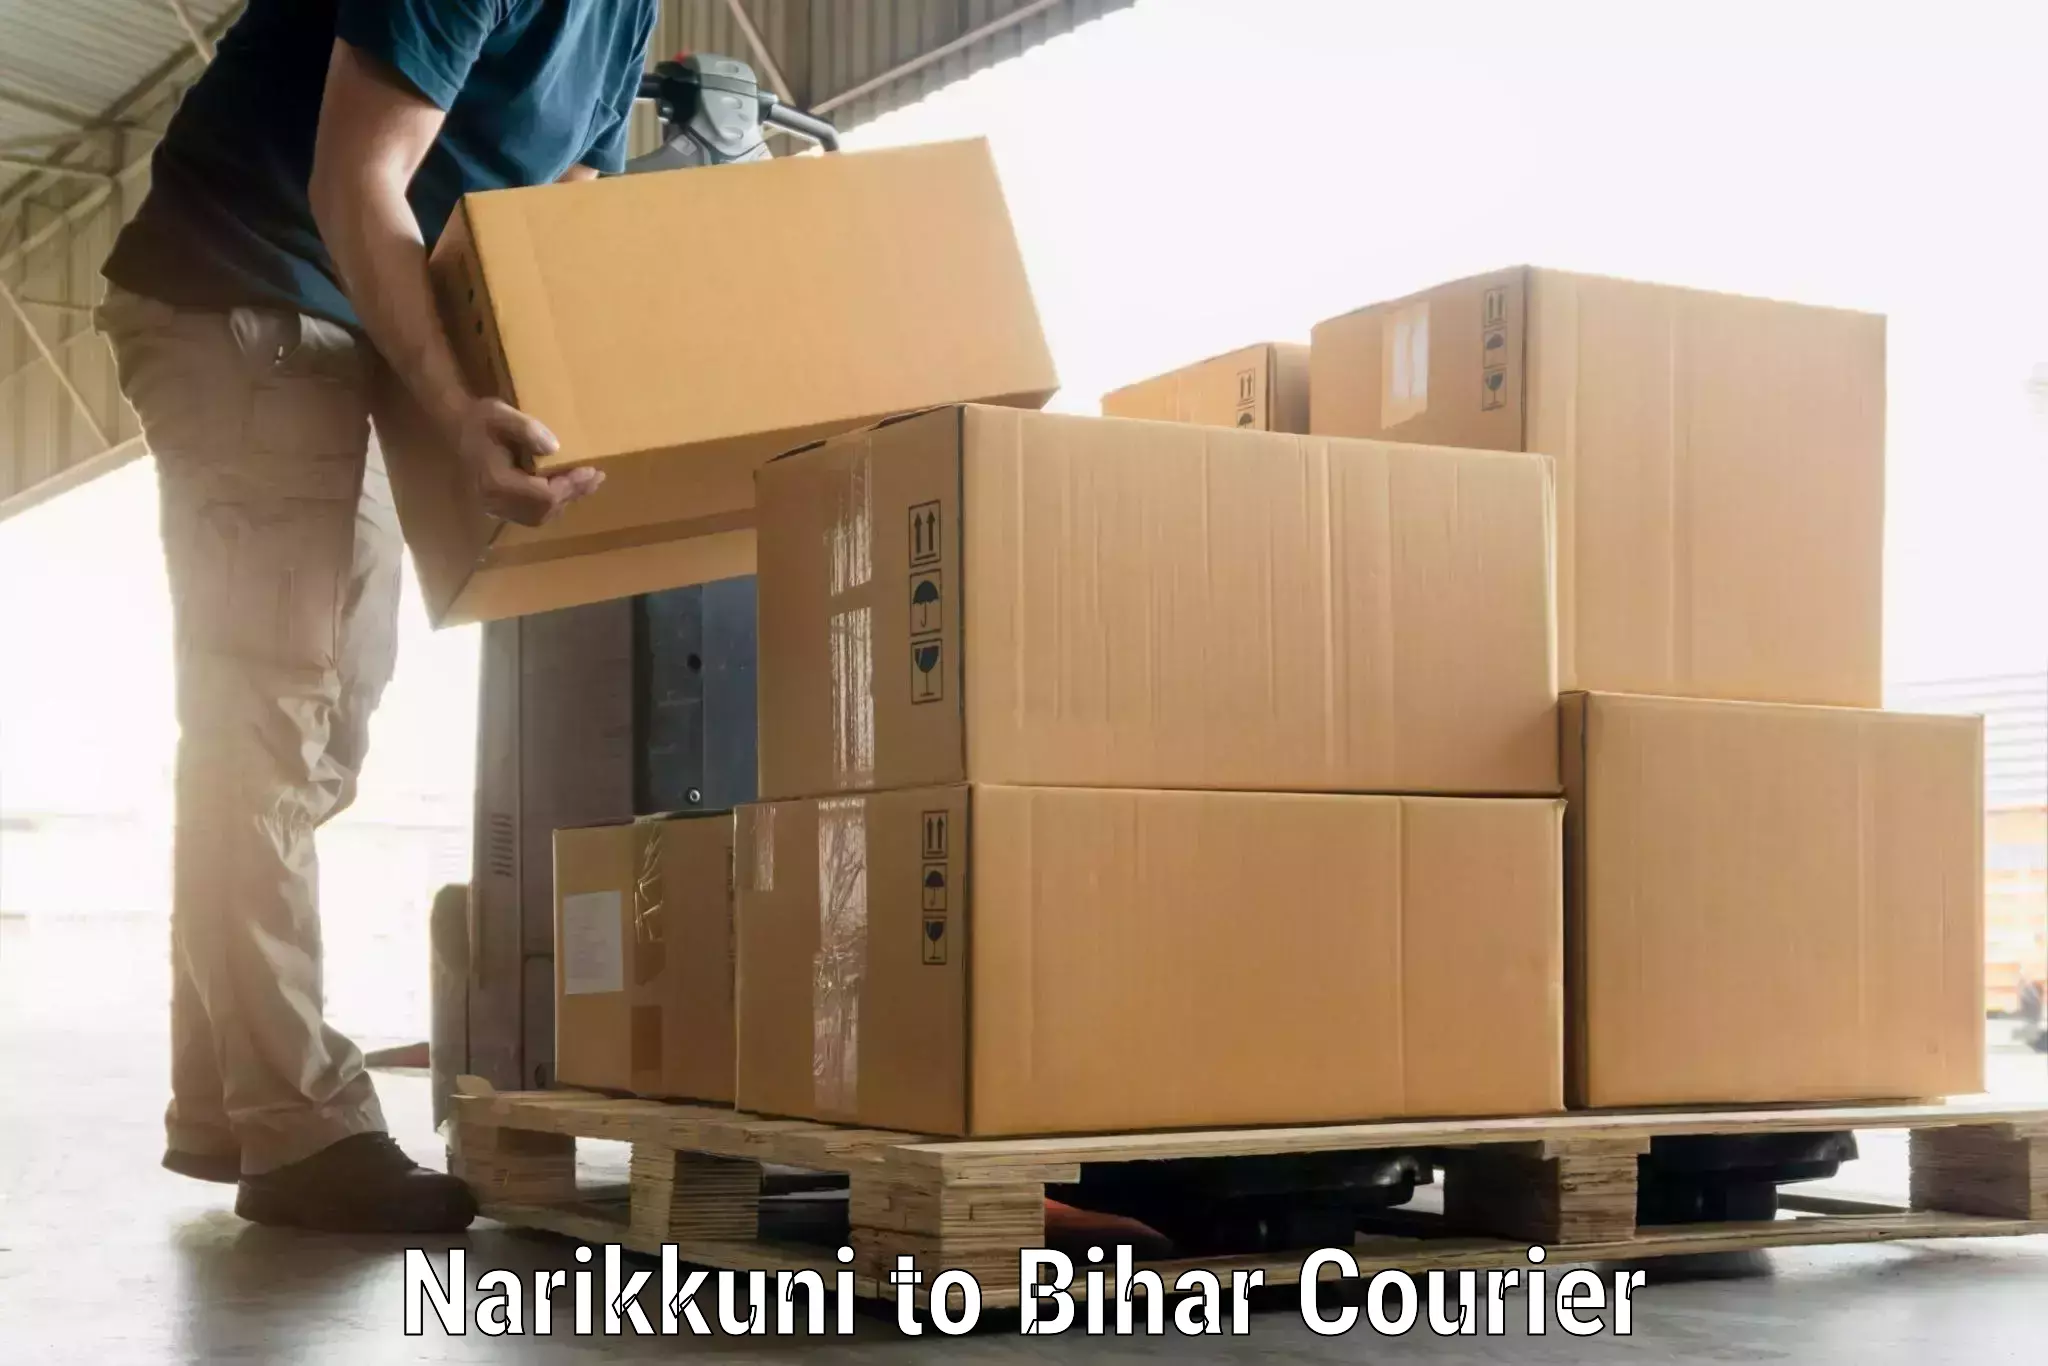 Hassle-free luggage shipping Narikkuni to Kamtaul